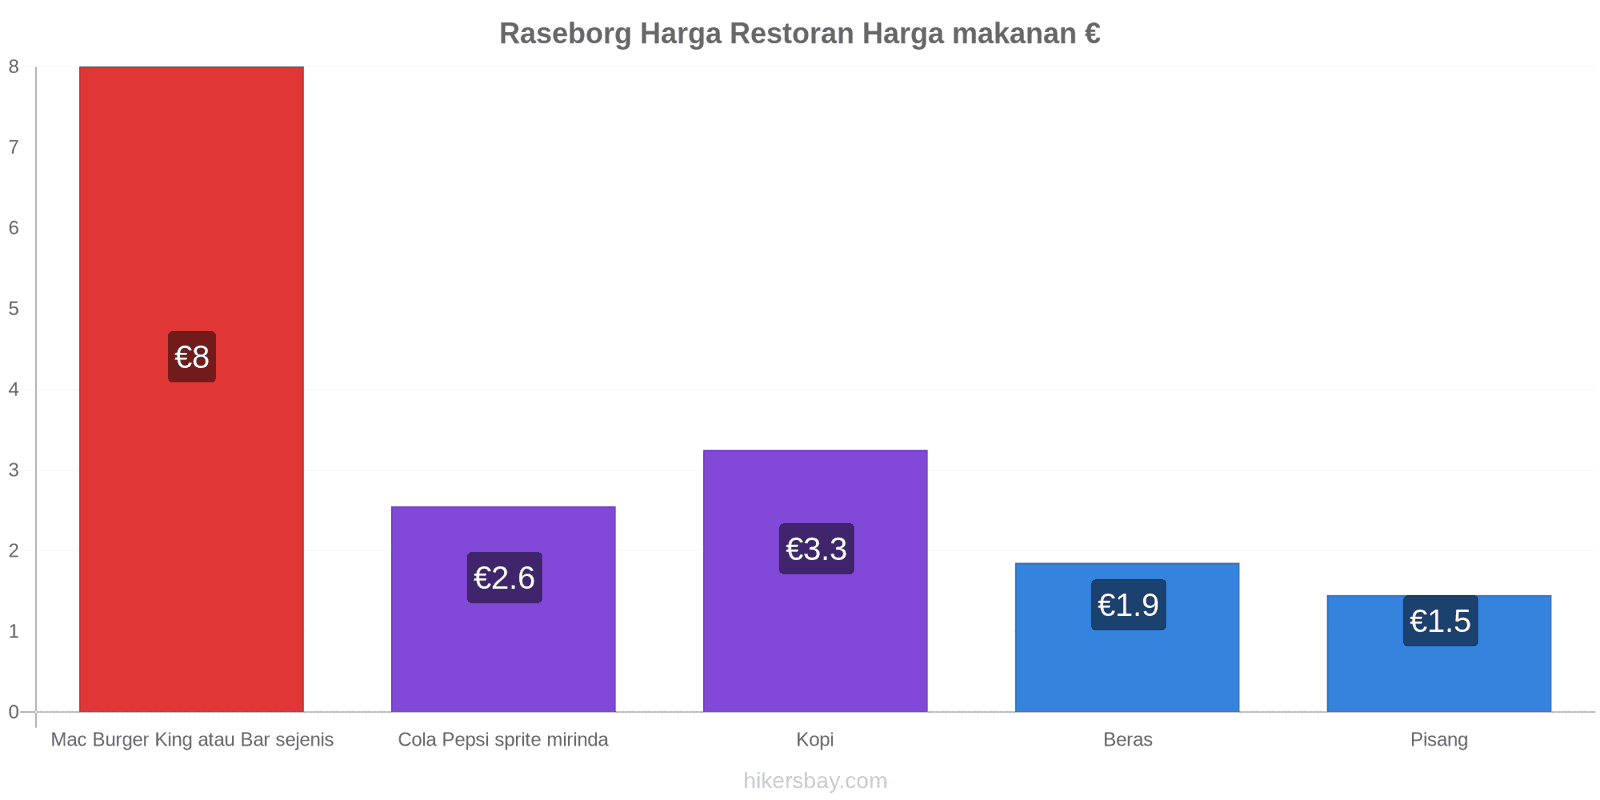 Raseborg perubahan harga hikersbay.com